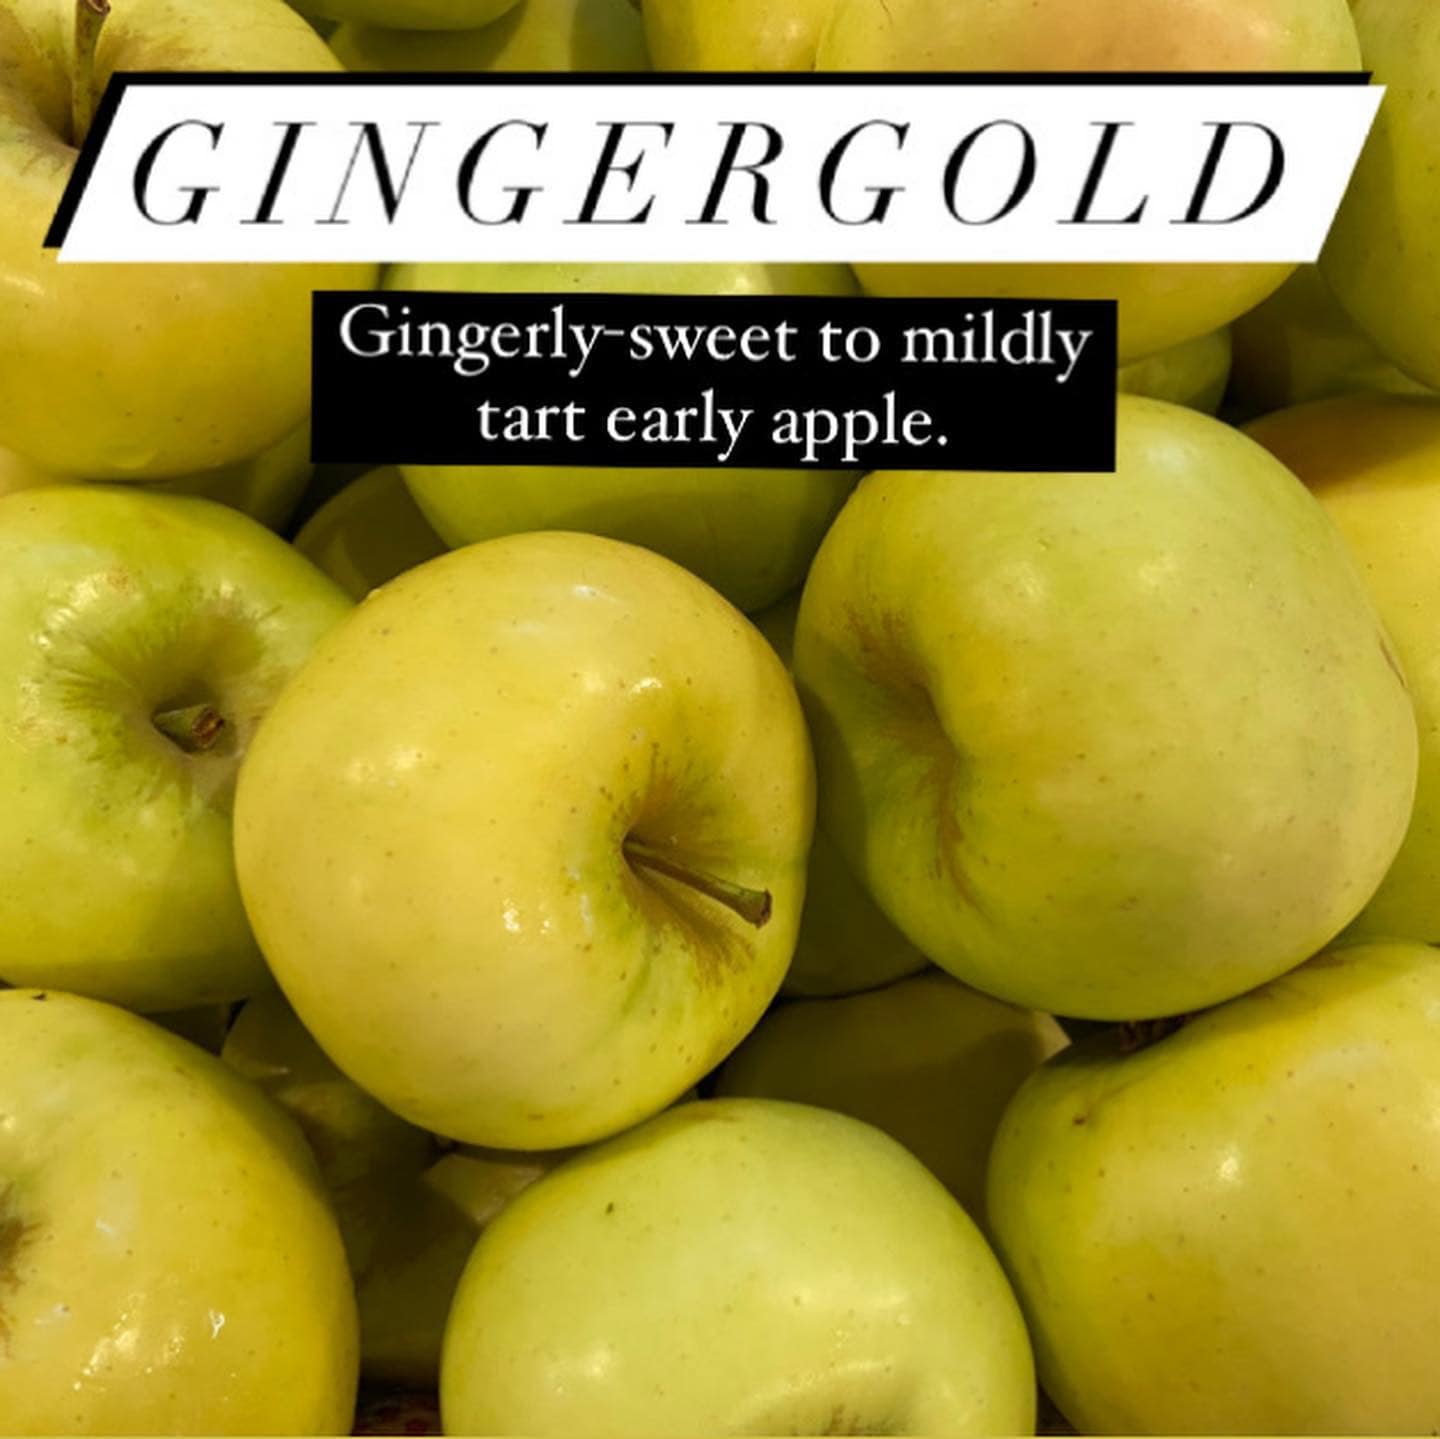 Phillips Farms Apple Picking Gingergold